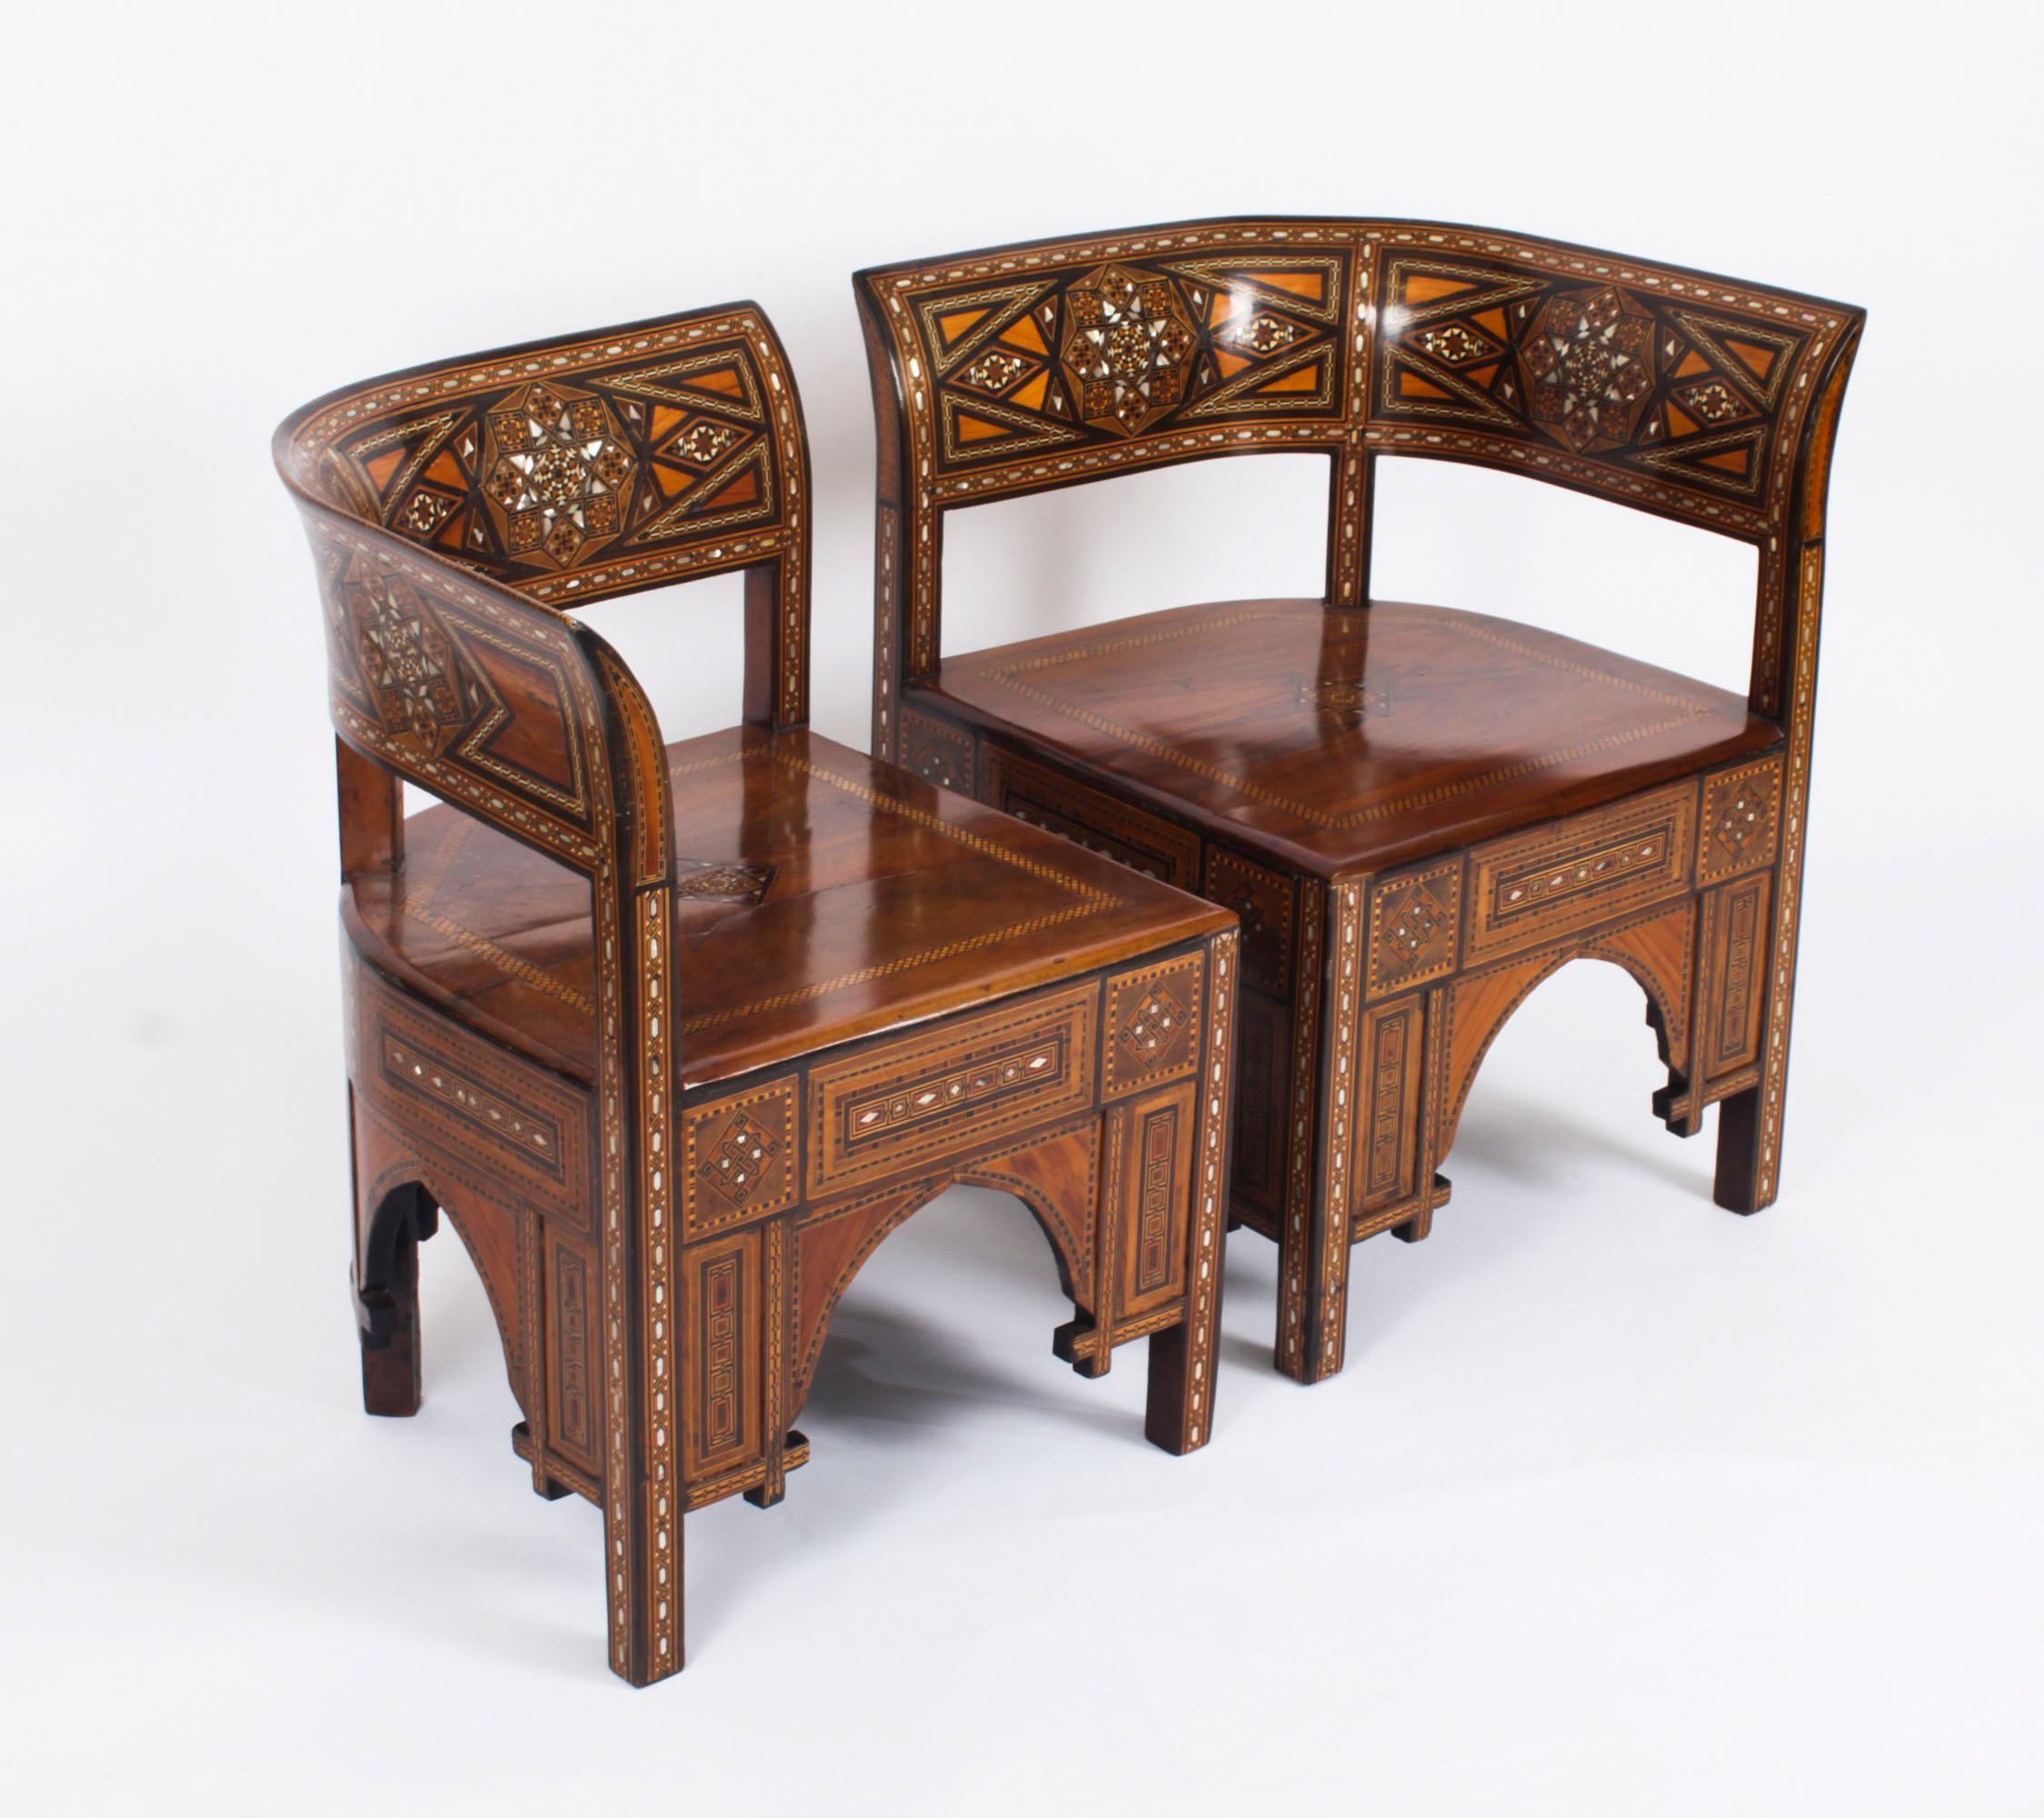 Ein hervorragendes Paar syrischer Damaszener-Sessel, CIRCA 1900.

Das atemberaubende Paar Parkett-Sessel ist in exquisiter Handarbeit aus Hartholz gefertigt und mit wundervollen  Einlegearbeiten aus Ebenholz, Nussbaum und verschiedenen Obsthölzern